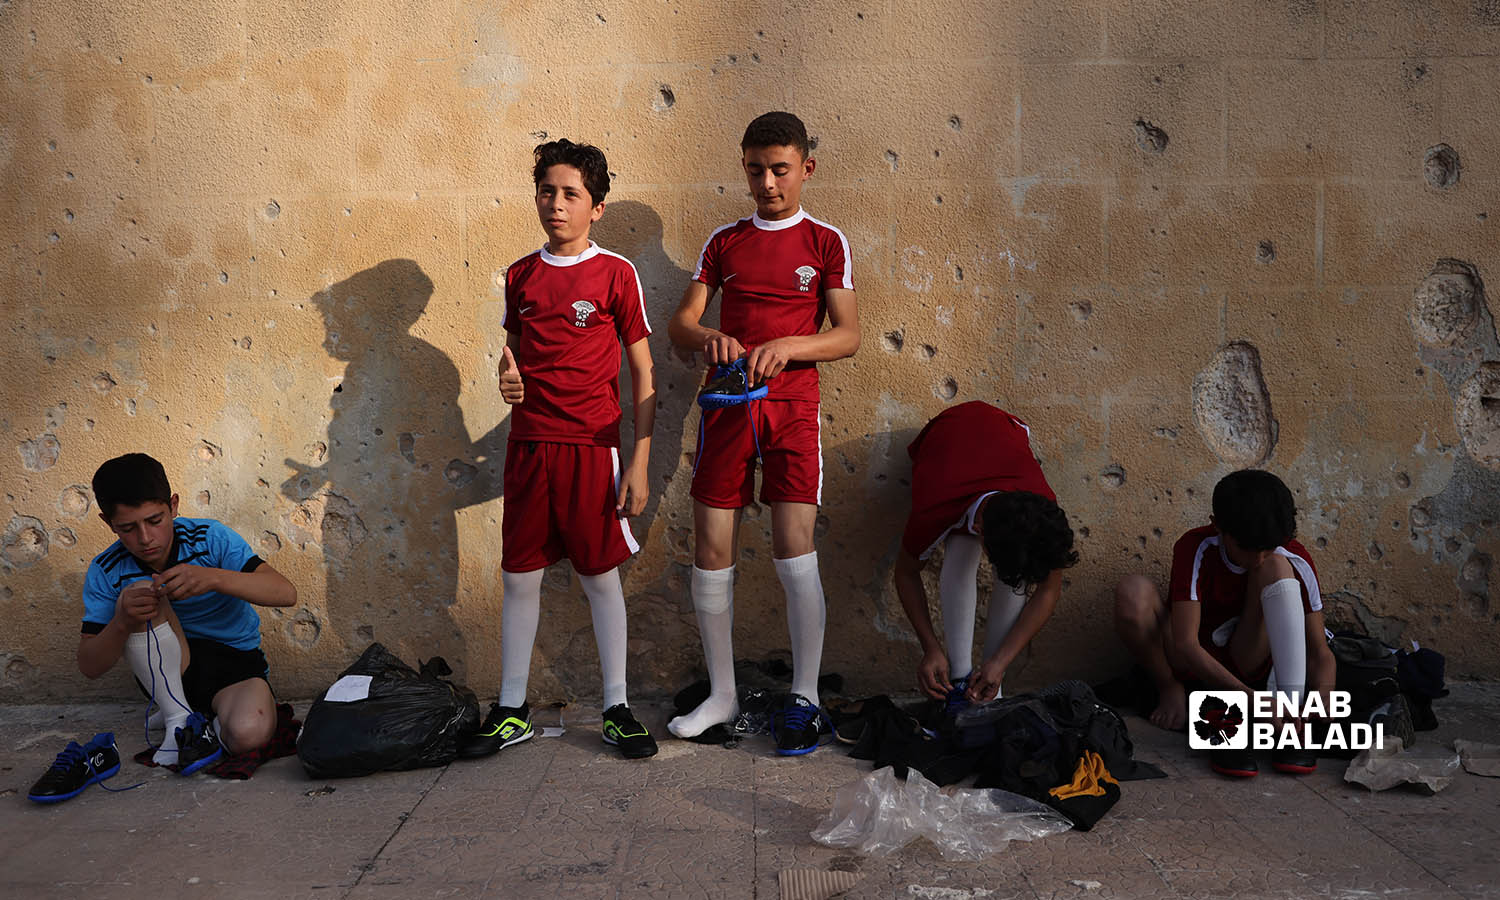 أطفال ناشئين يرتدون ملابسهم الرياضية على حيط مدمر في ملعب إدلب البلدي - 20 تشرين الثاني 2022 (عنب بلدي \ انس الخولي)